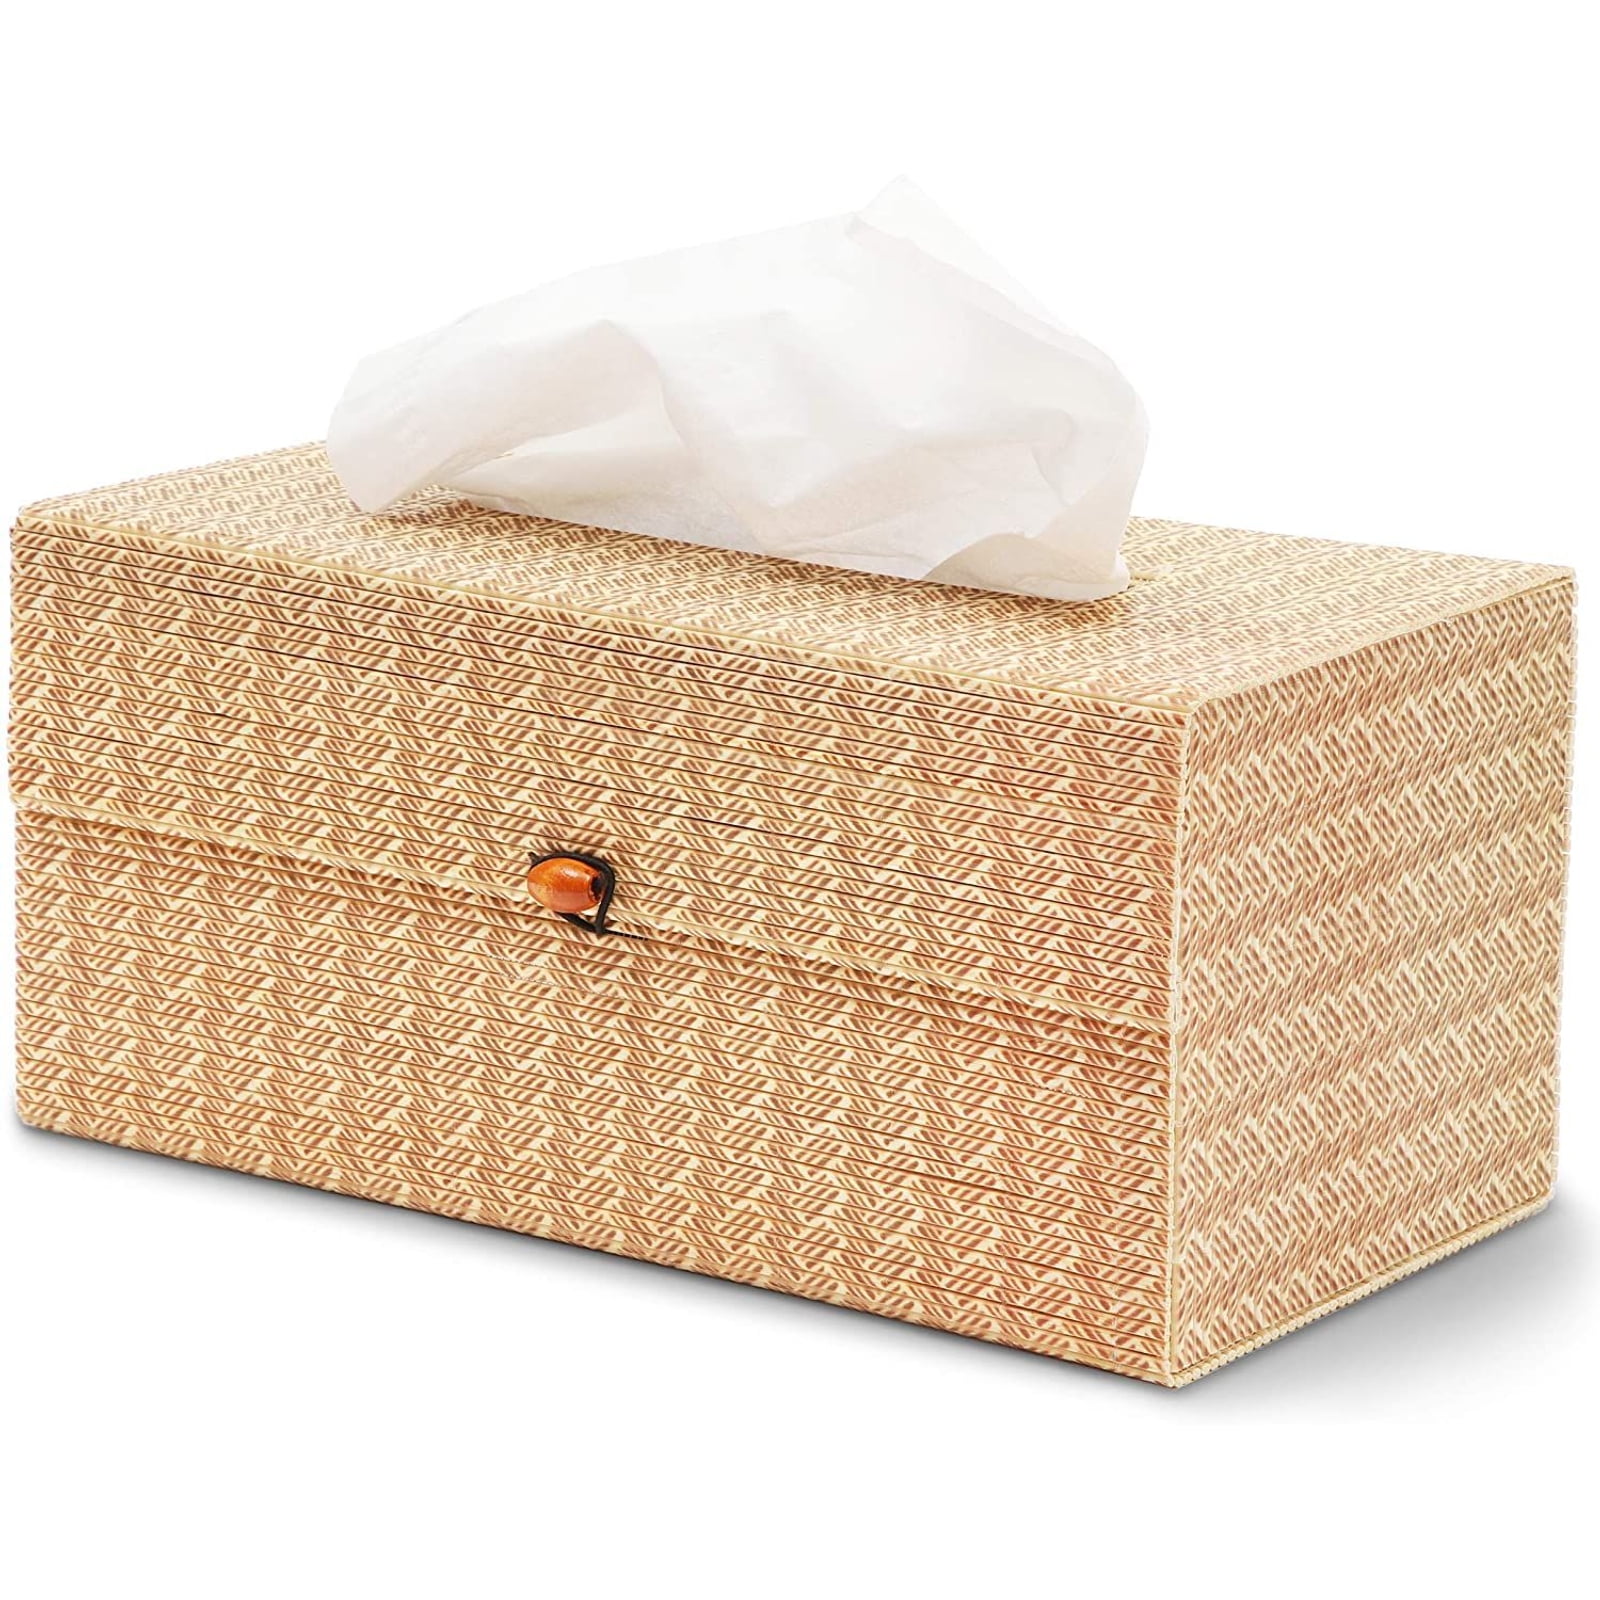 Tissue Box Paper Holder Cover Napkin Case Dispenser Storage For Home Office US 